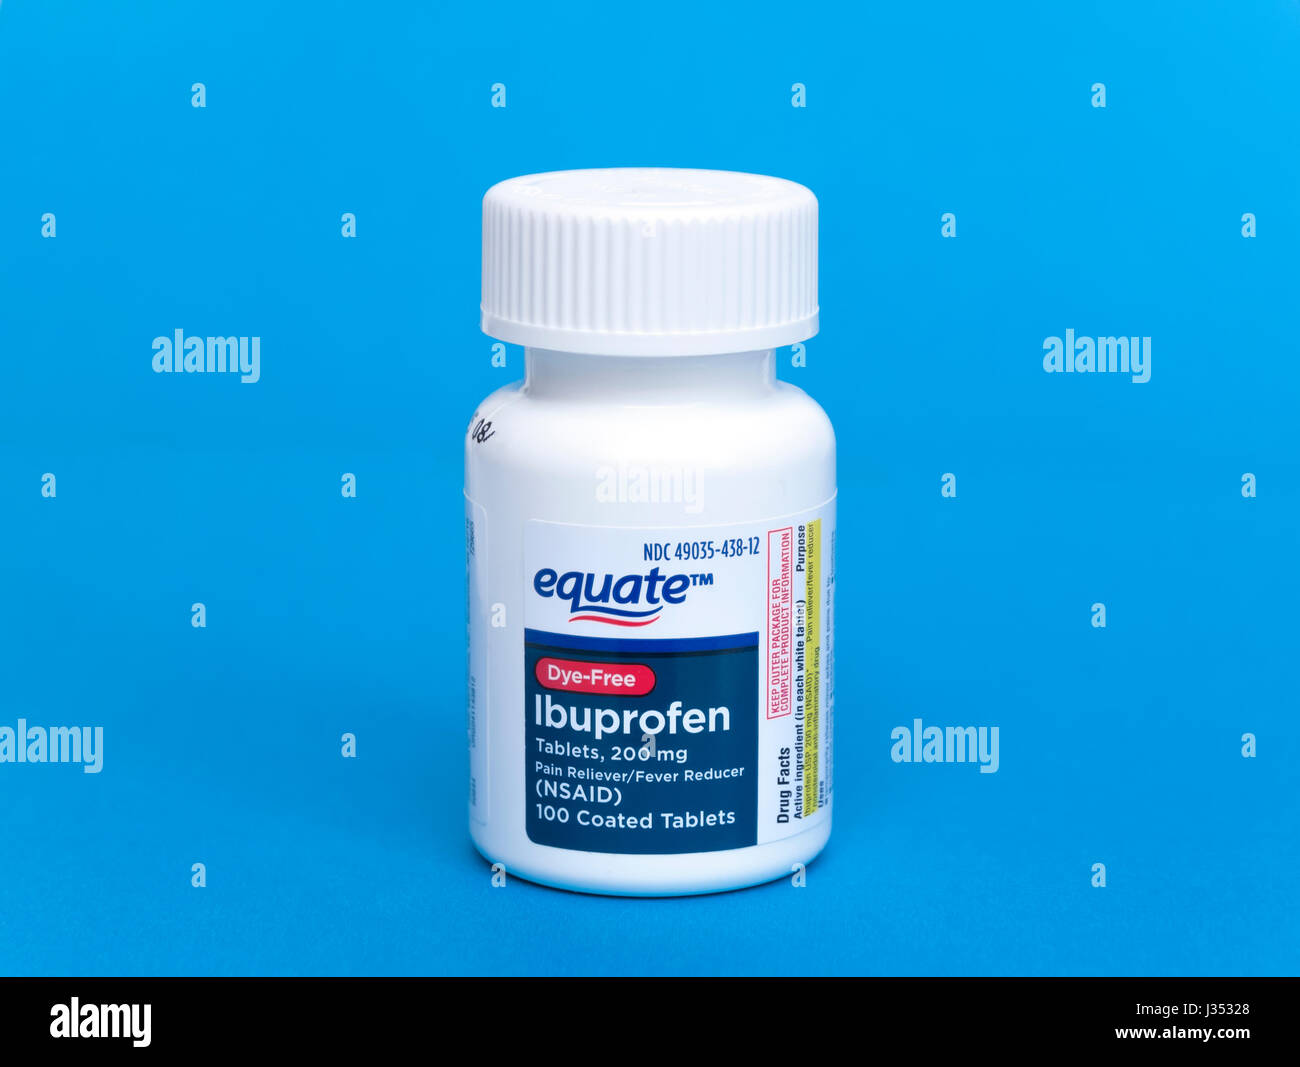 Botella de equiparar, Generic Ibuprofen, tinte (libres) que se usa para reducir la inflamación y el dolor en el cuerpo. Foto de stock